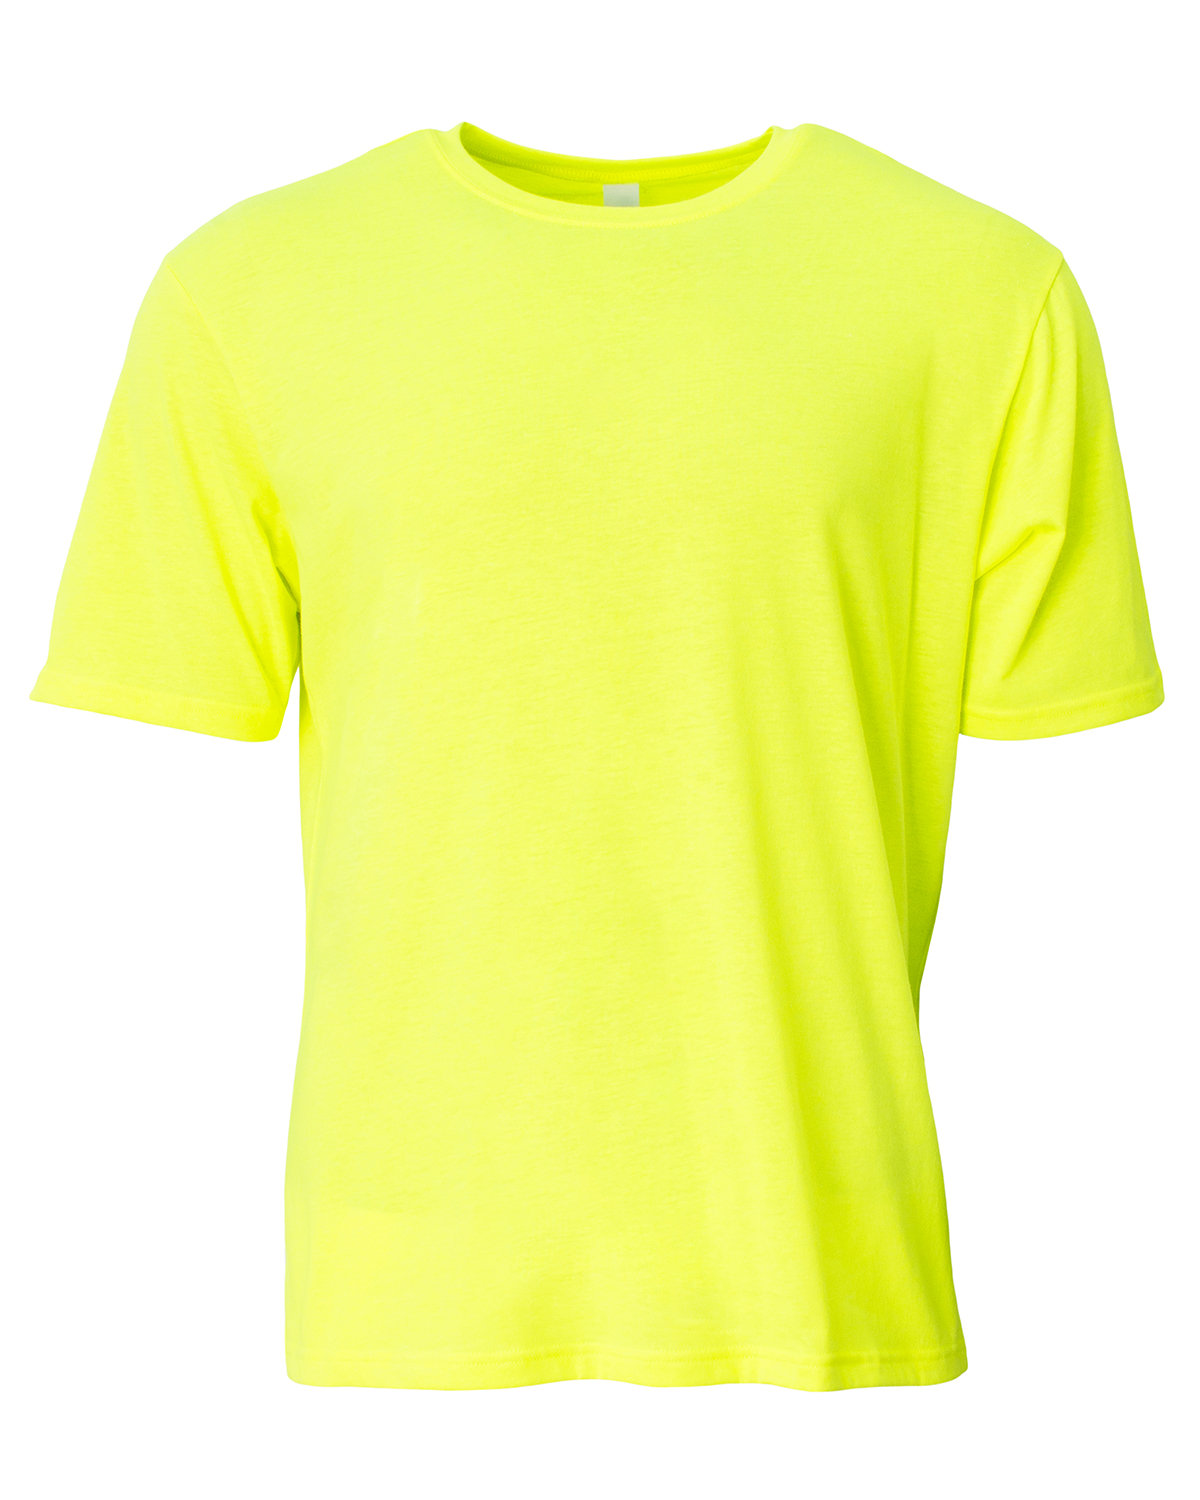 A4 N3013 - Adult Softek T-Shirt